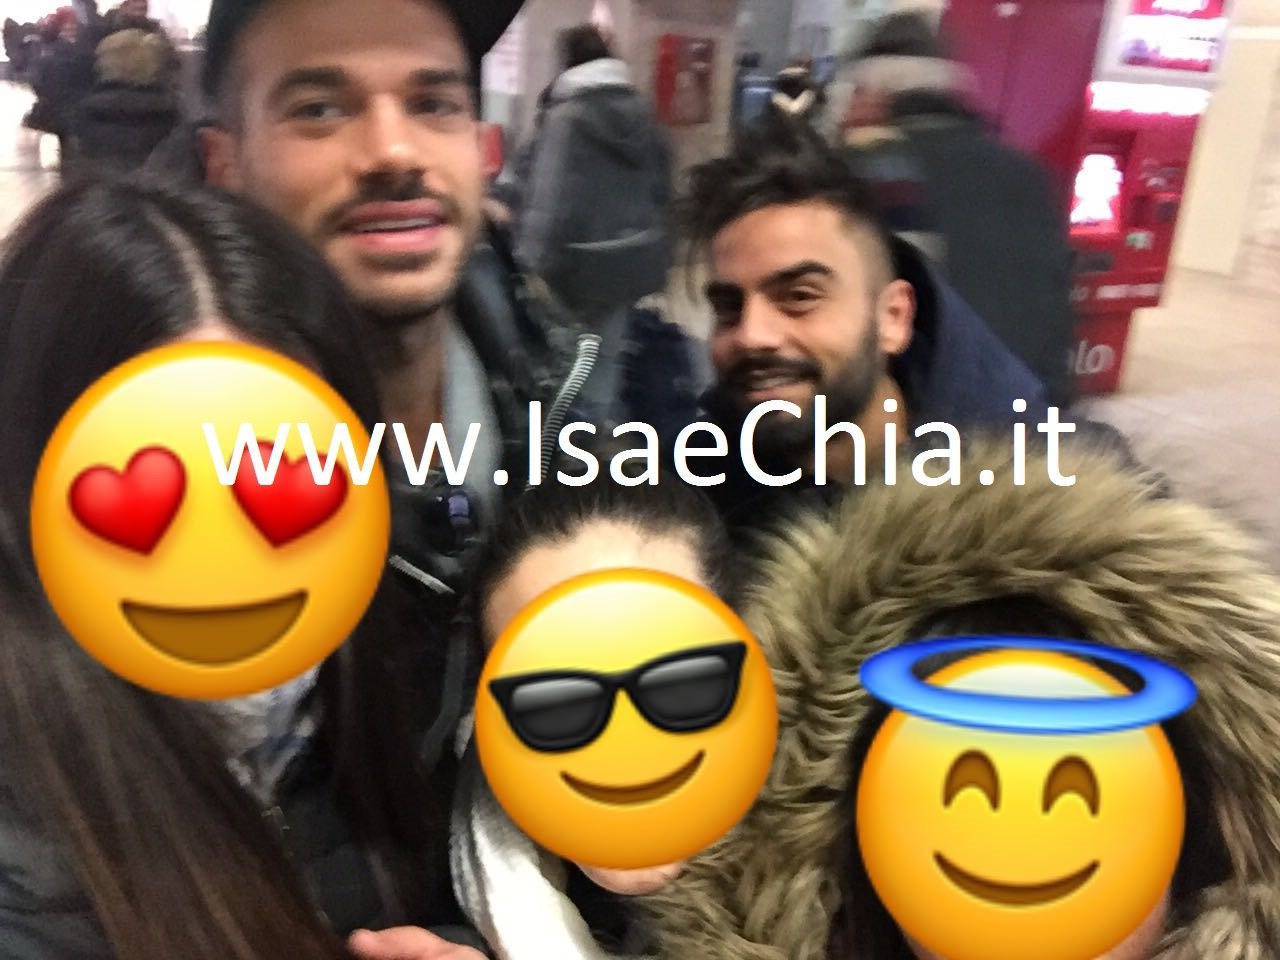 Claudio Sona raggiunge Mario Serpa a Roma: le foto inedite di una utente di IsaeChia.it che li ha avvistati in stazione!